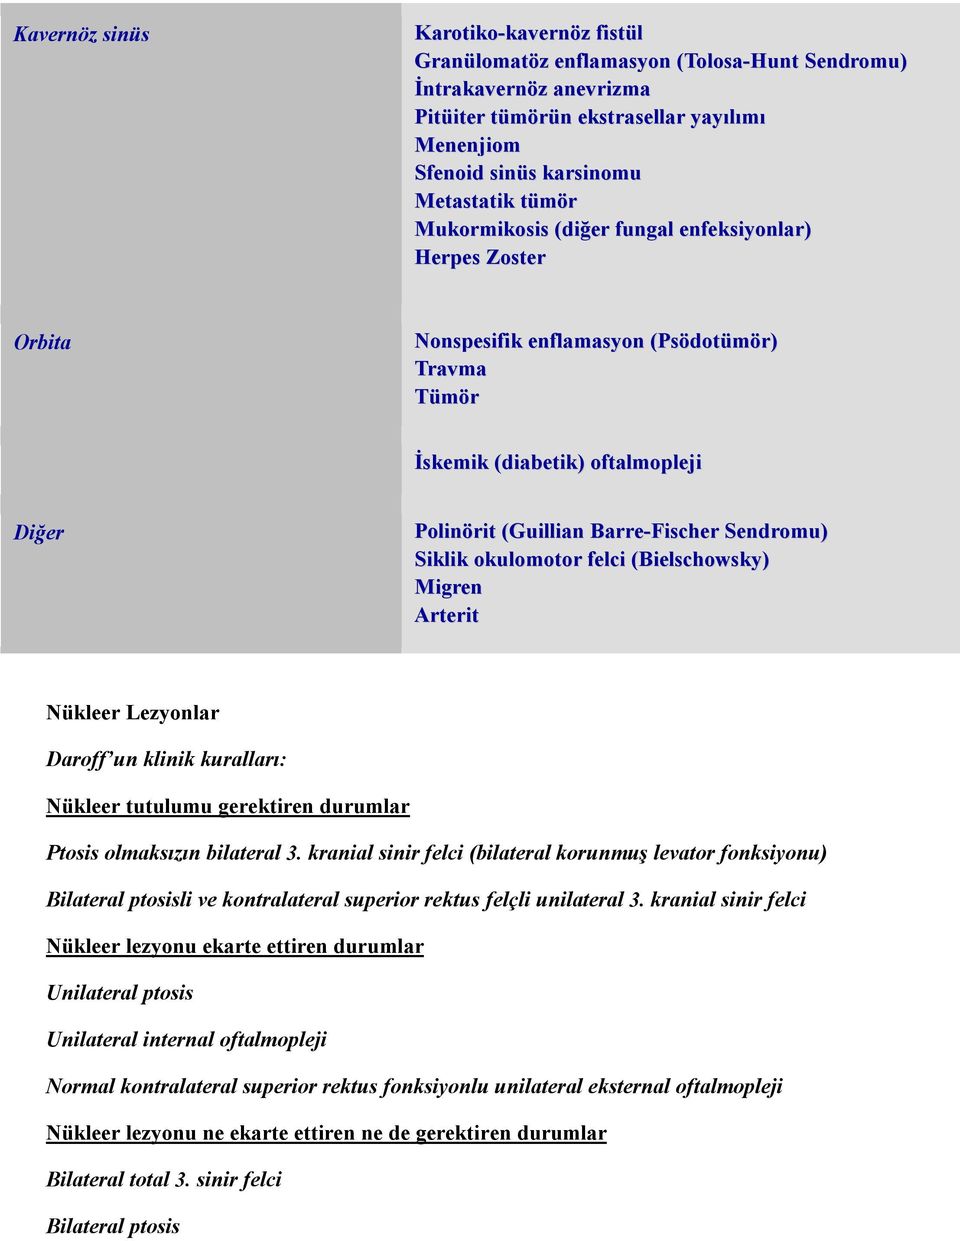 Sendromu) Siklik okulomotor felci (Bielschowsky) Migren Arterit Nükleer Lezyonlar Daroff un klinik kuralları: Nükleer tutulumu gerektiren durumlar Ptosis olmaksızın bilateral 3.